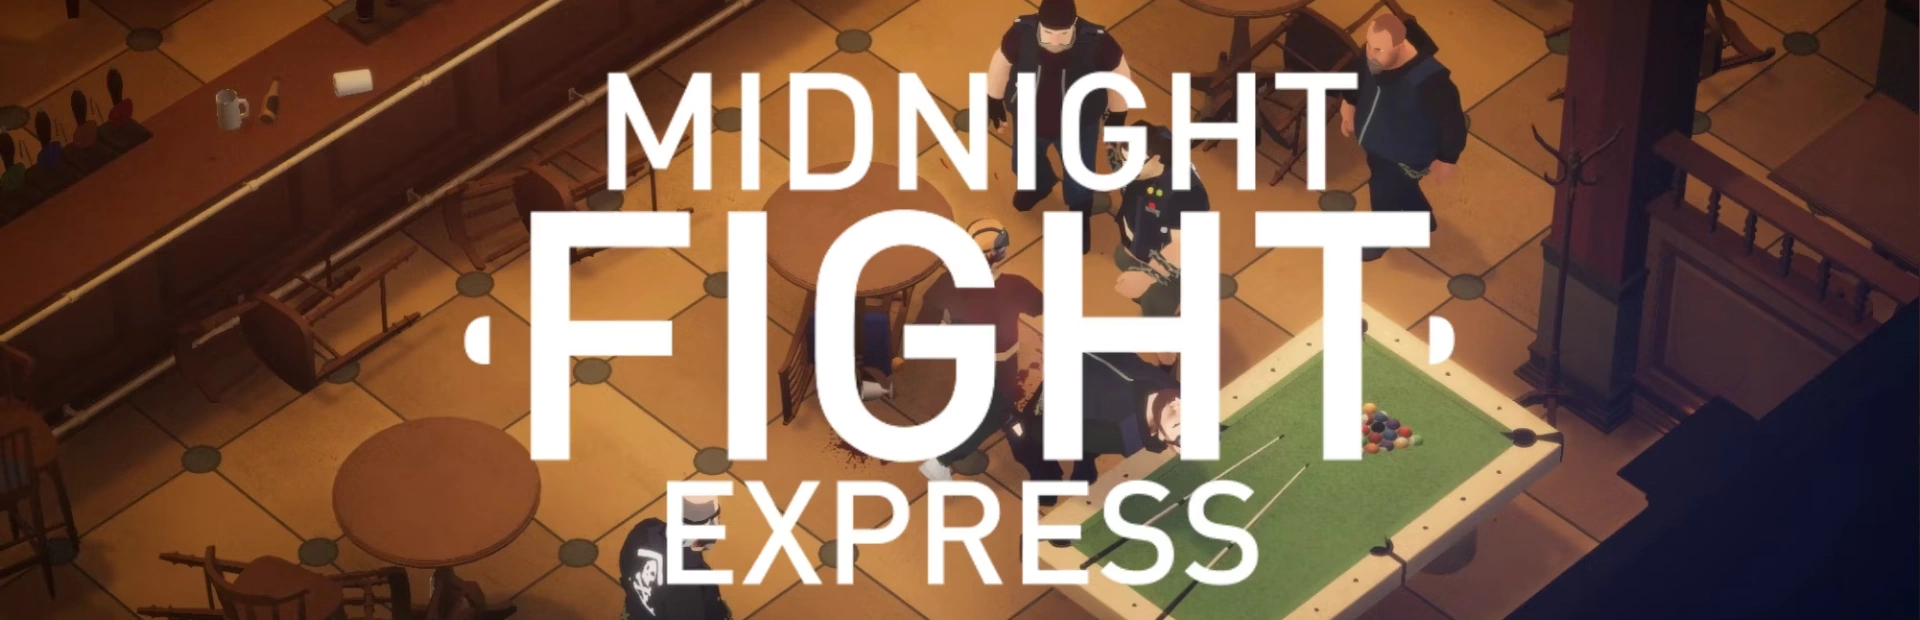 دانلود بازی Midnight Fight Express برای PC | گیمباتو